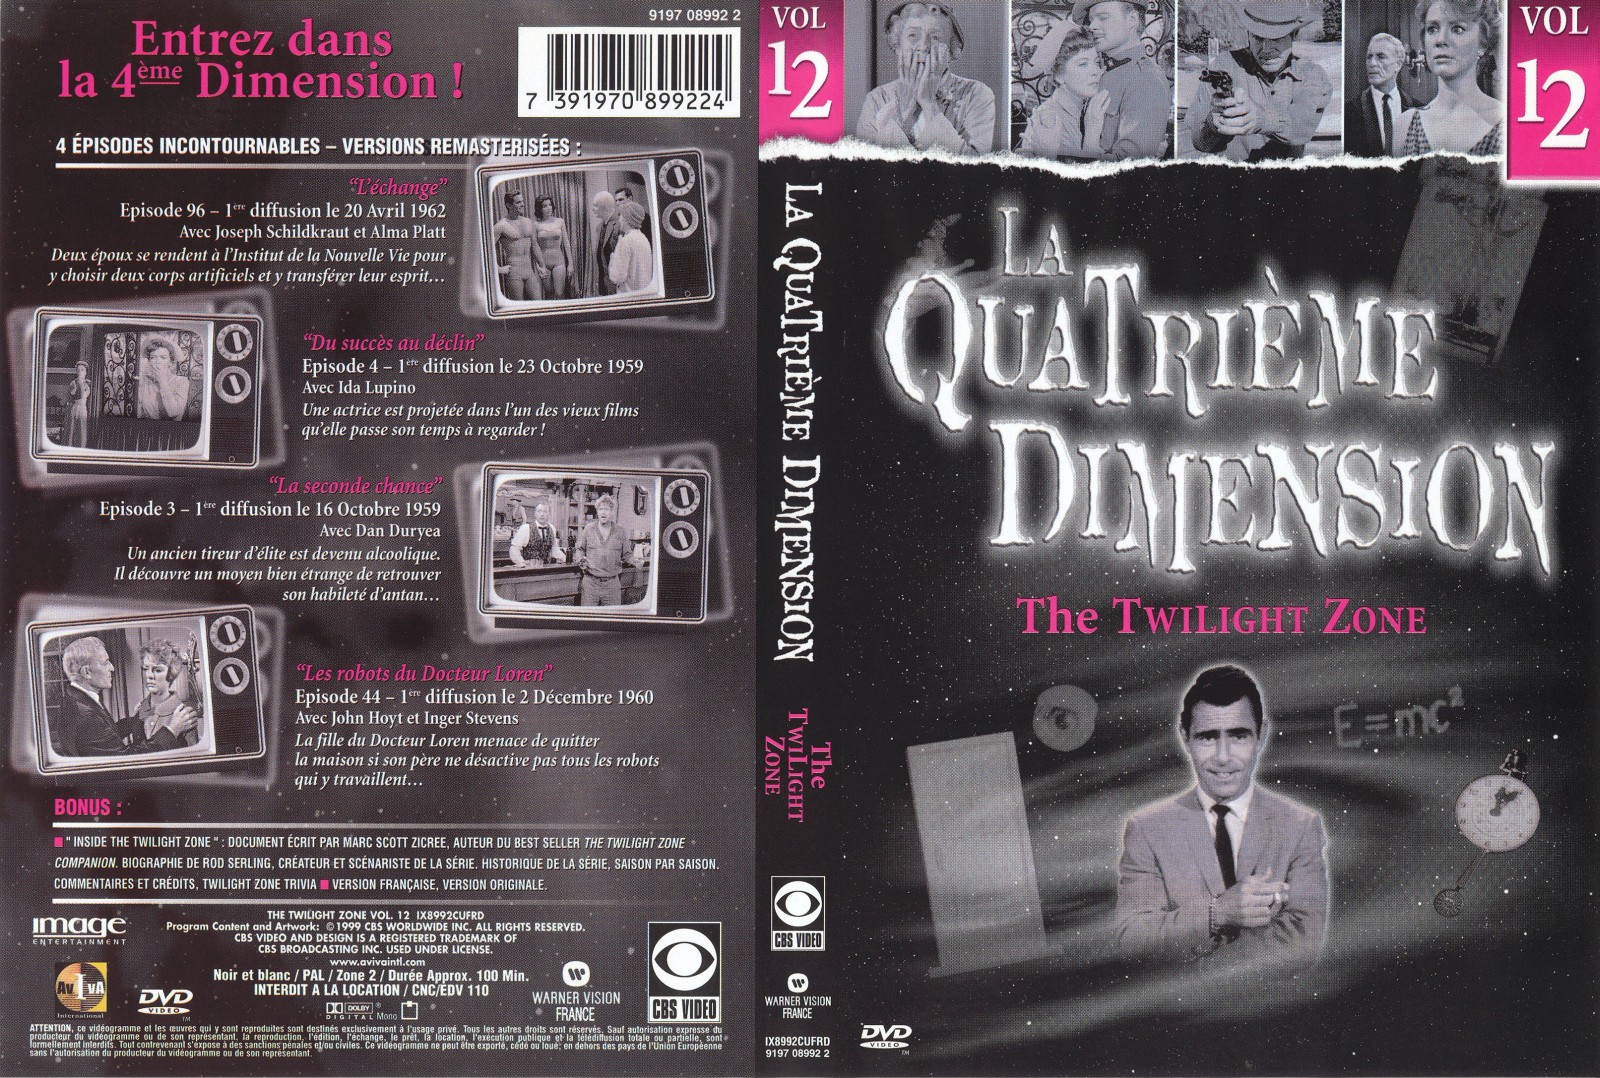 Jaquette DVD La quatrieme dimension vol 12